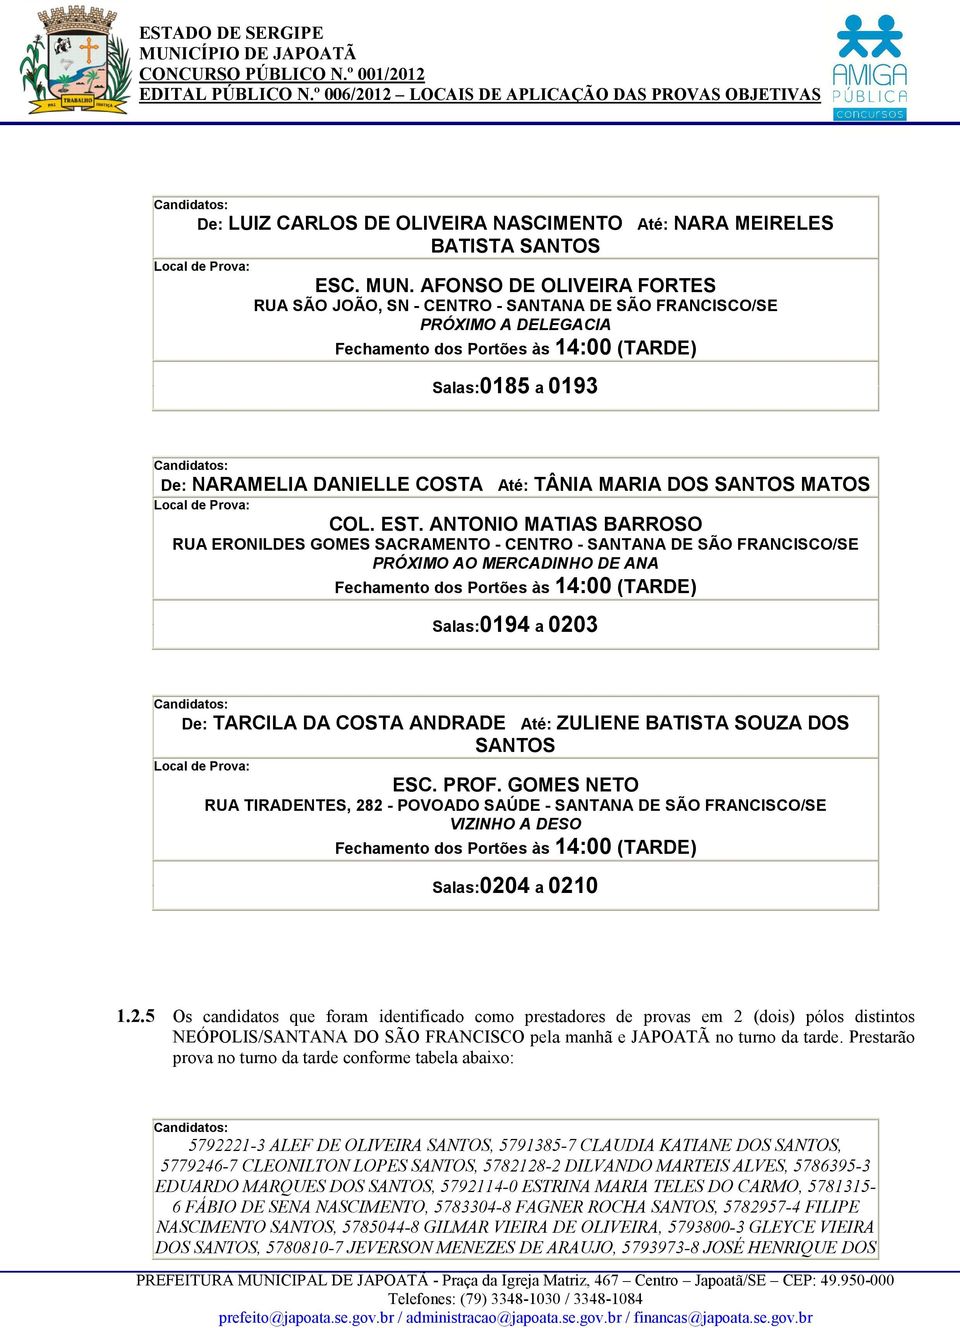 ANTONIO MATIAS BARROSO RUA ERONILDES GOMES SACRAMENTO - CENTRO - SANTANA DE SÃO FRANCISCO/SE PRÓXIMO AO MERCADINHO DE ANA Salas:0194 a 0203 De: TARCILA DA COSTA ANDRADE Até: ZULIENE BATISTA SOUZA DOS